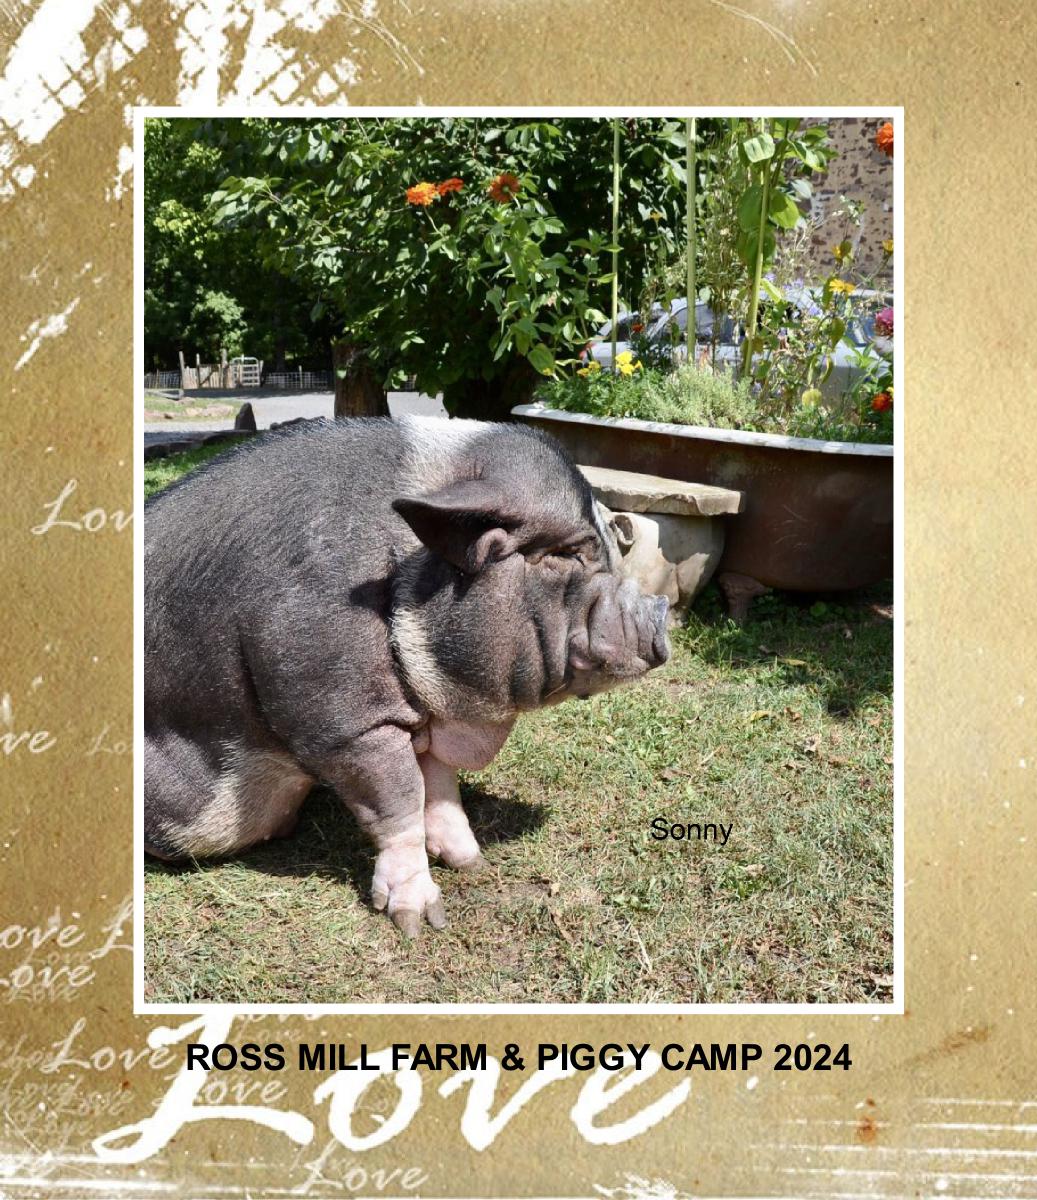 Ross Mill Farm & Piggy Camp Calendar 2024